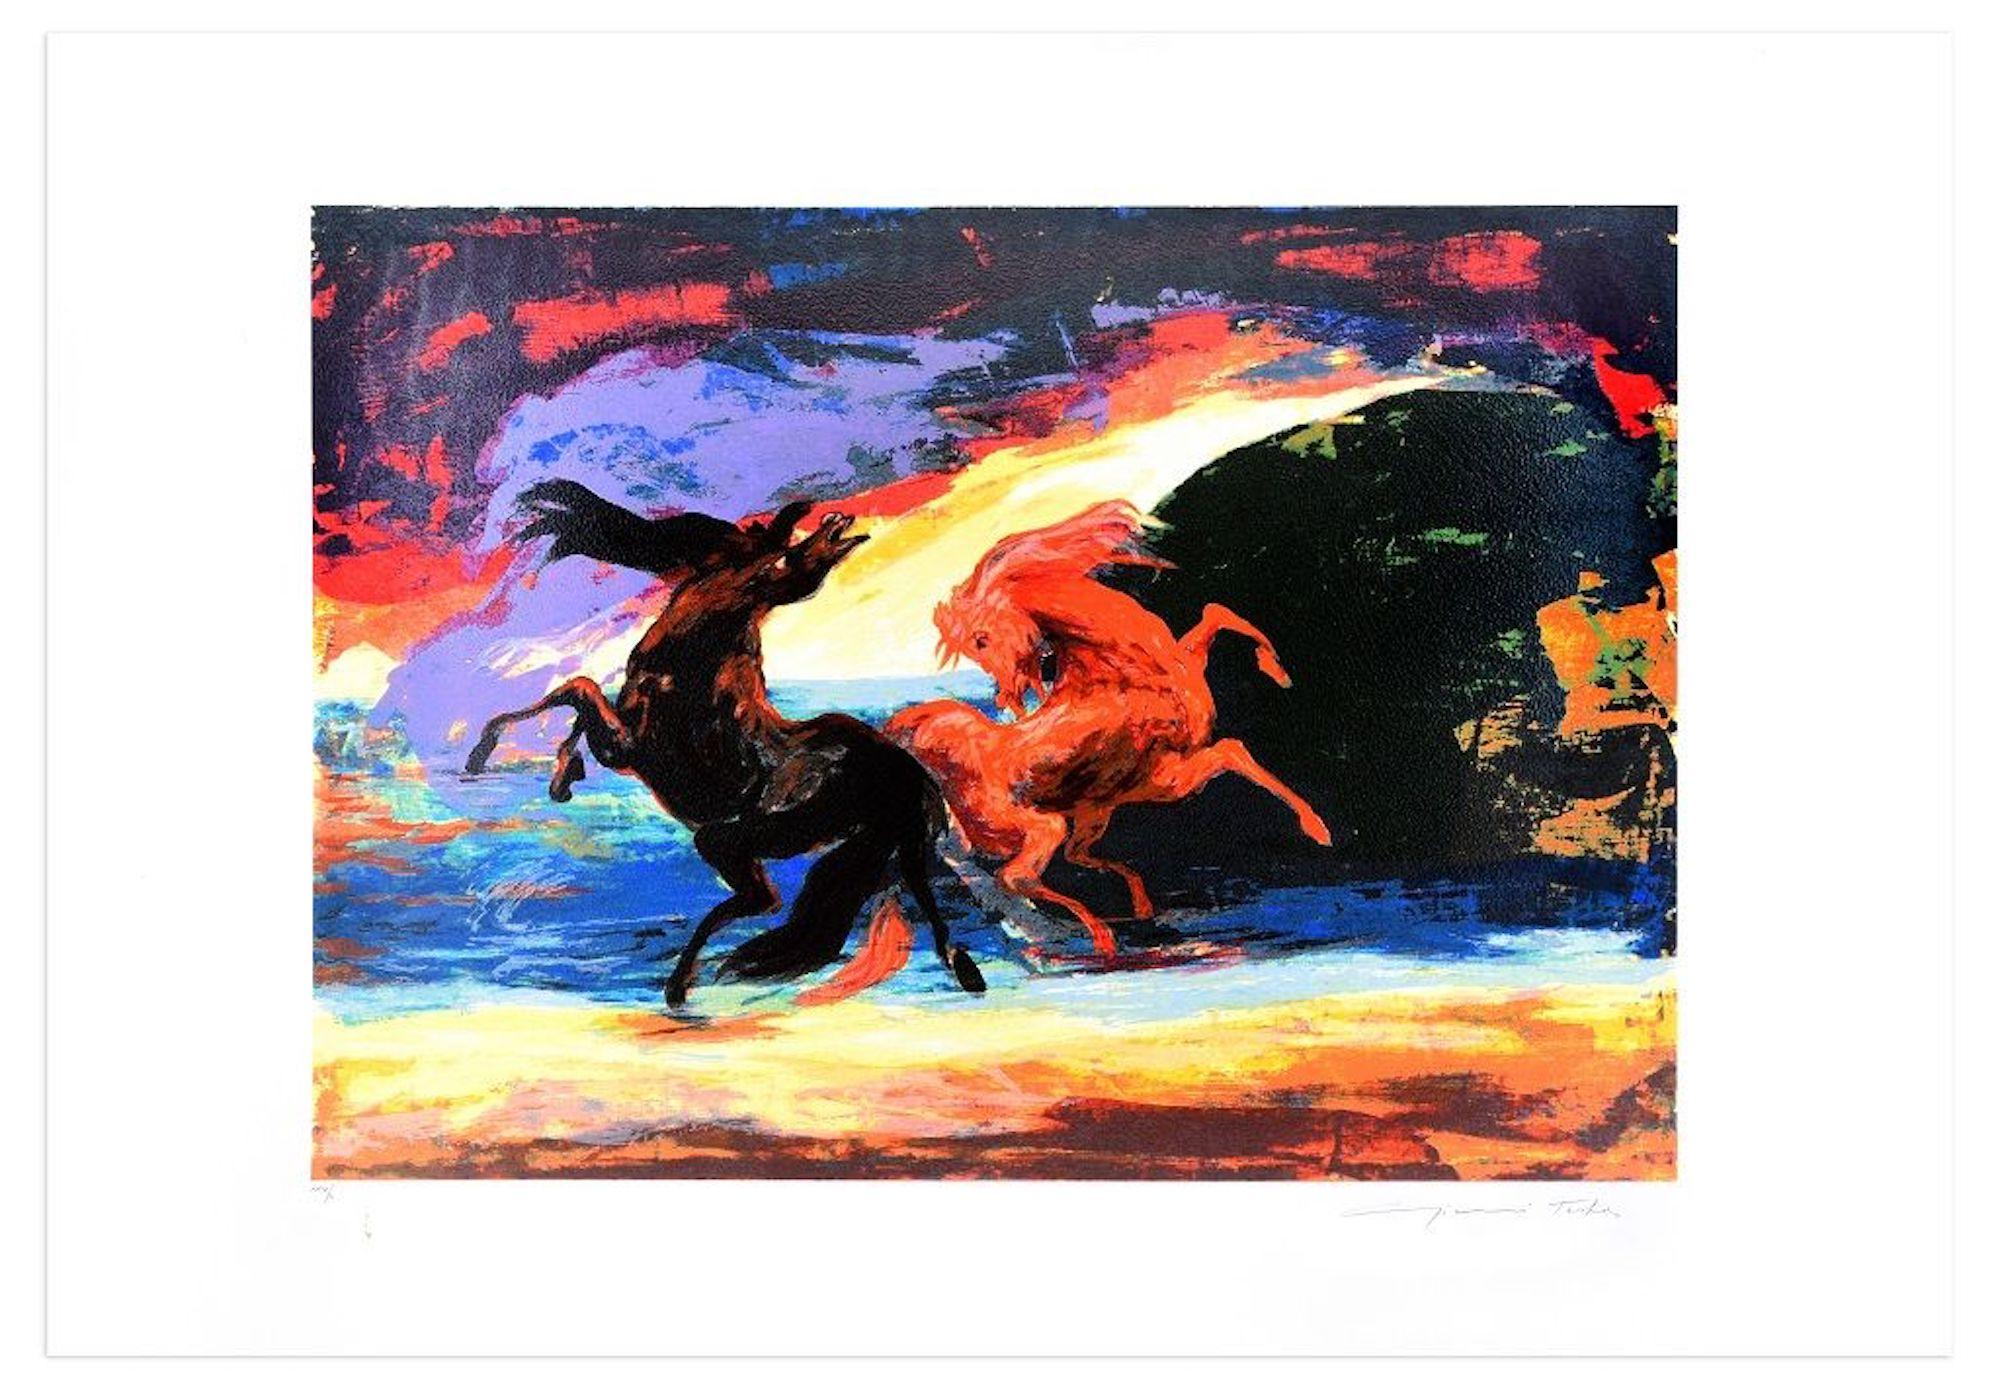 Carrusel de caballos - Serigrafía original de Gianni Testa - 1986